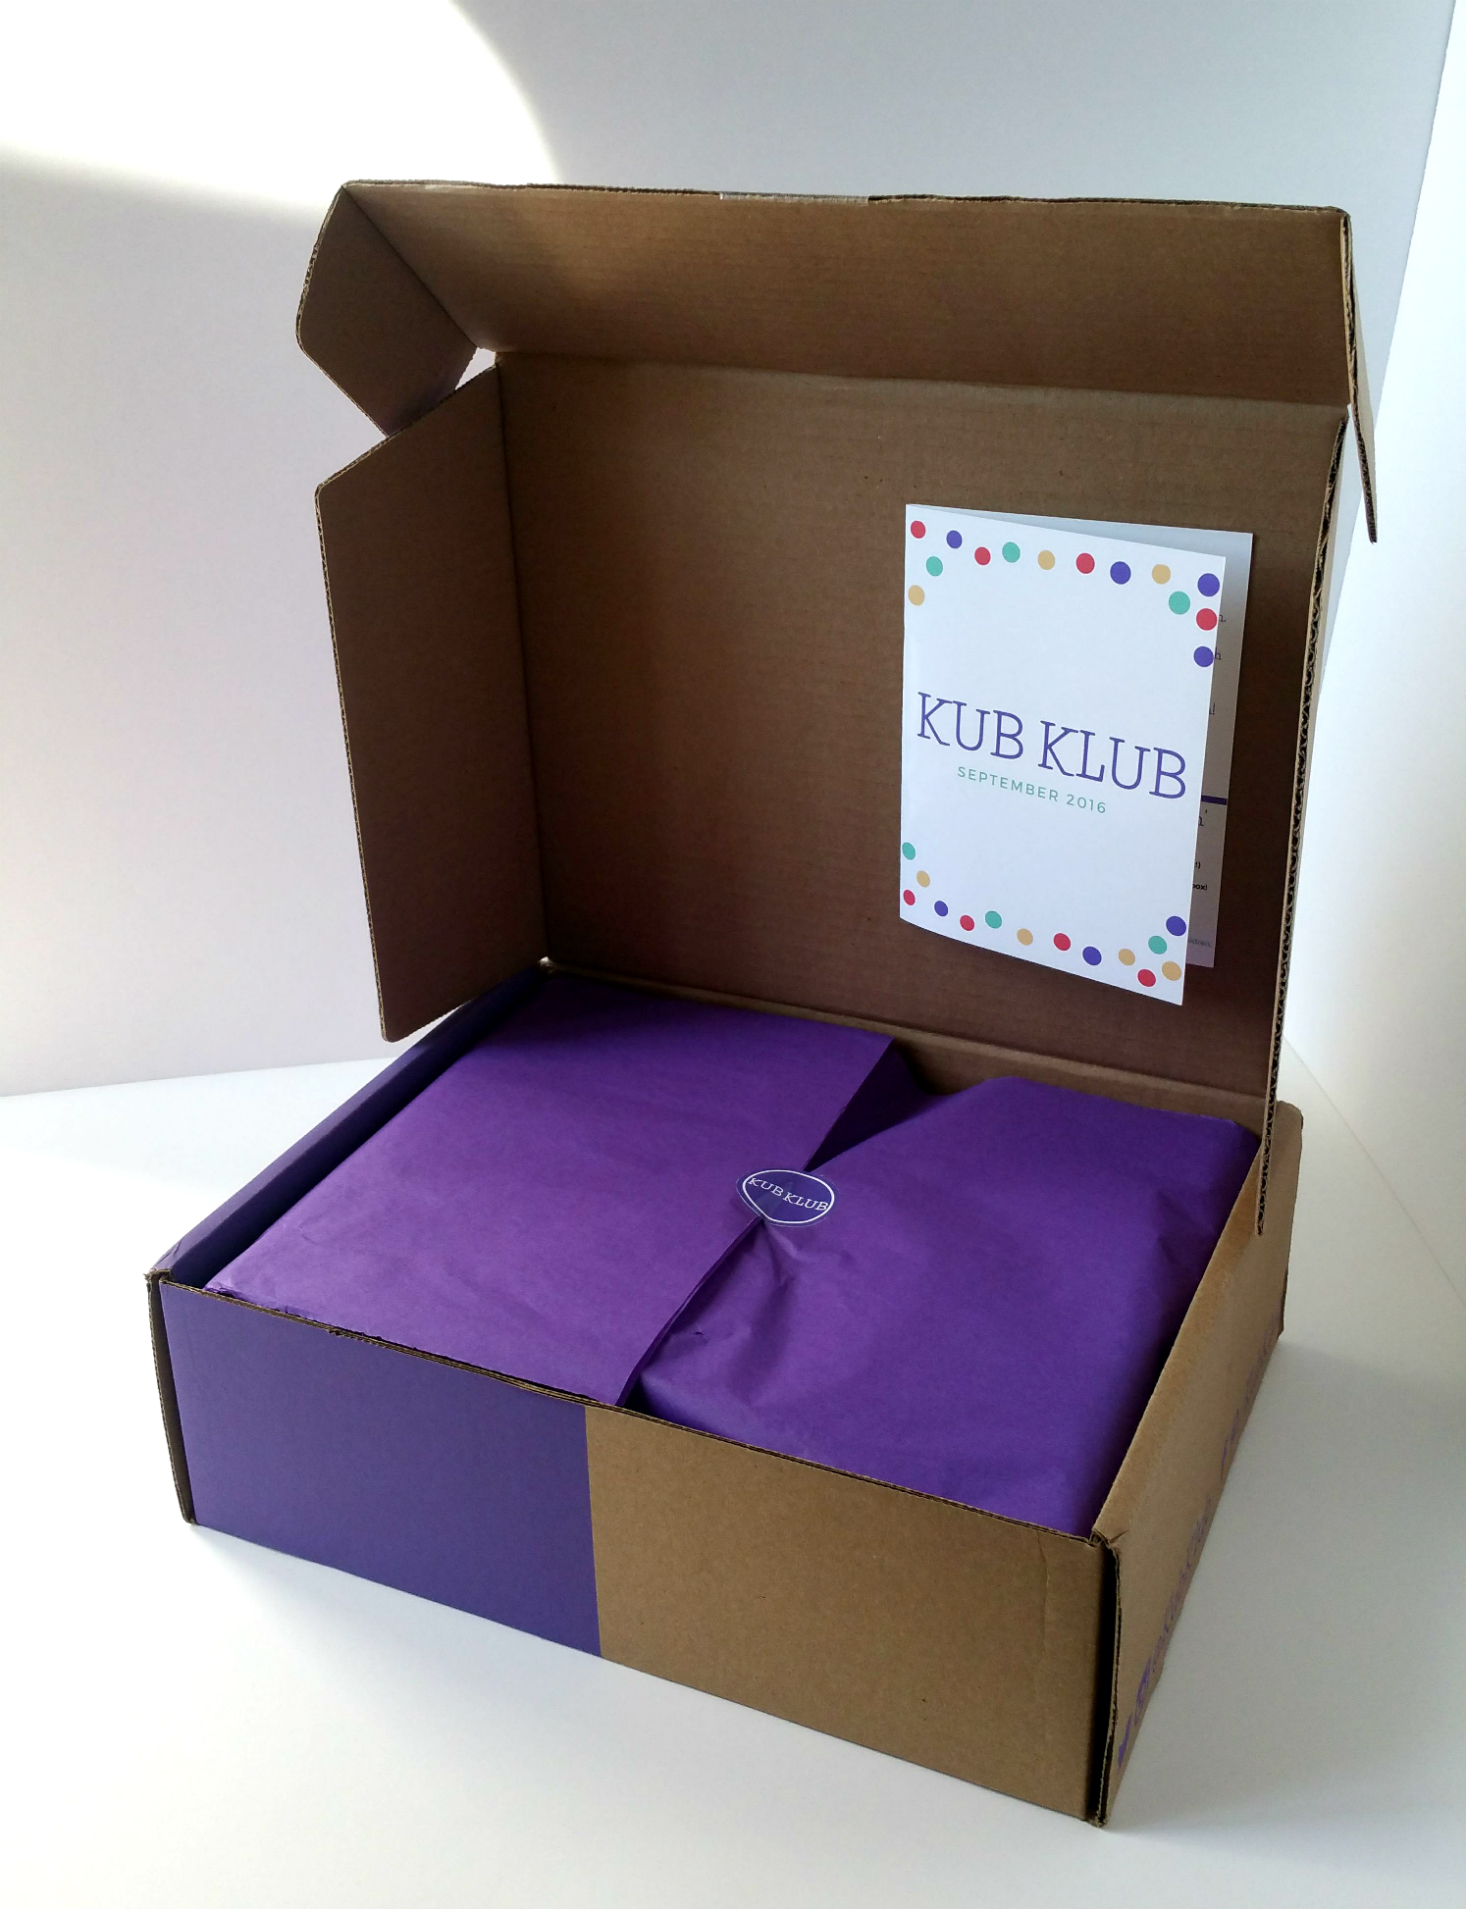 kub-klub-september-2016-box-open